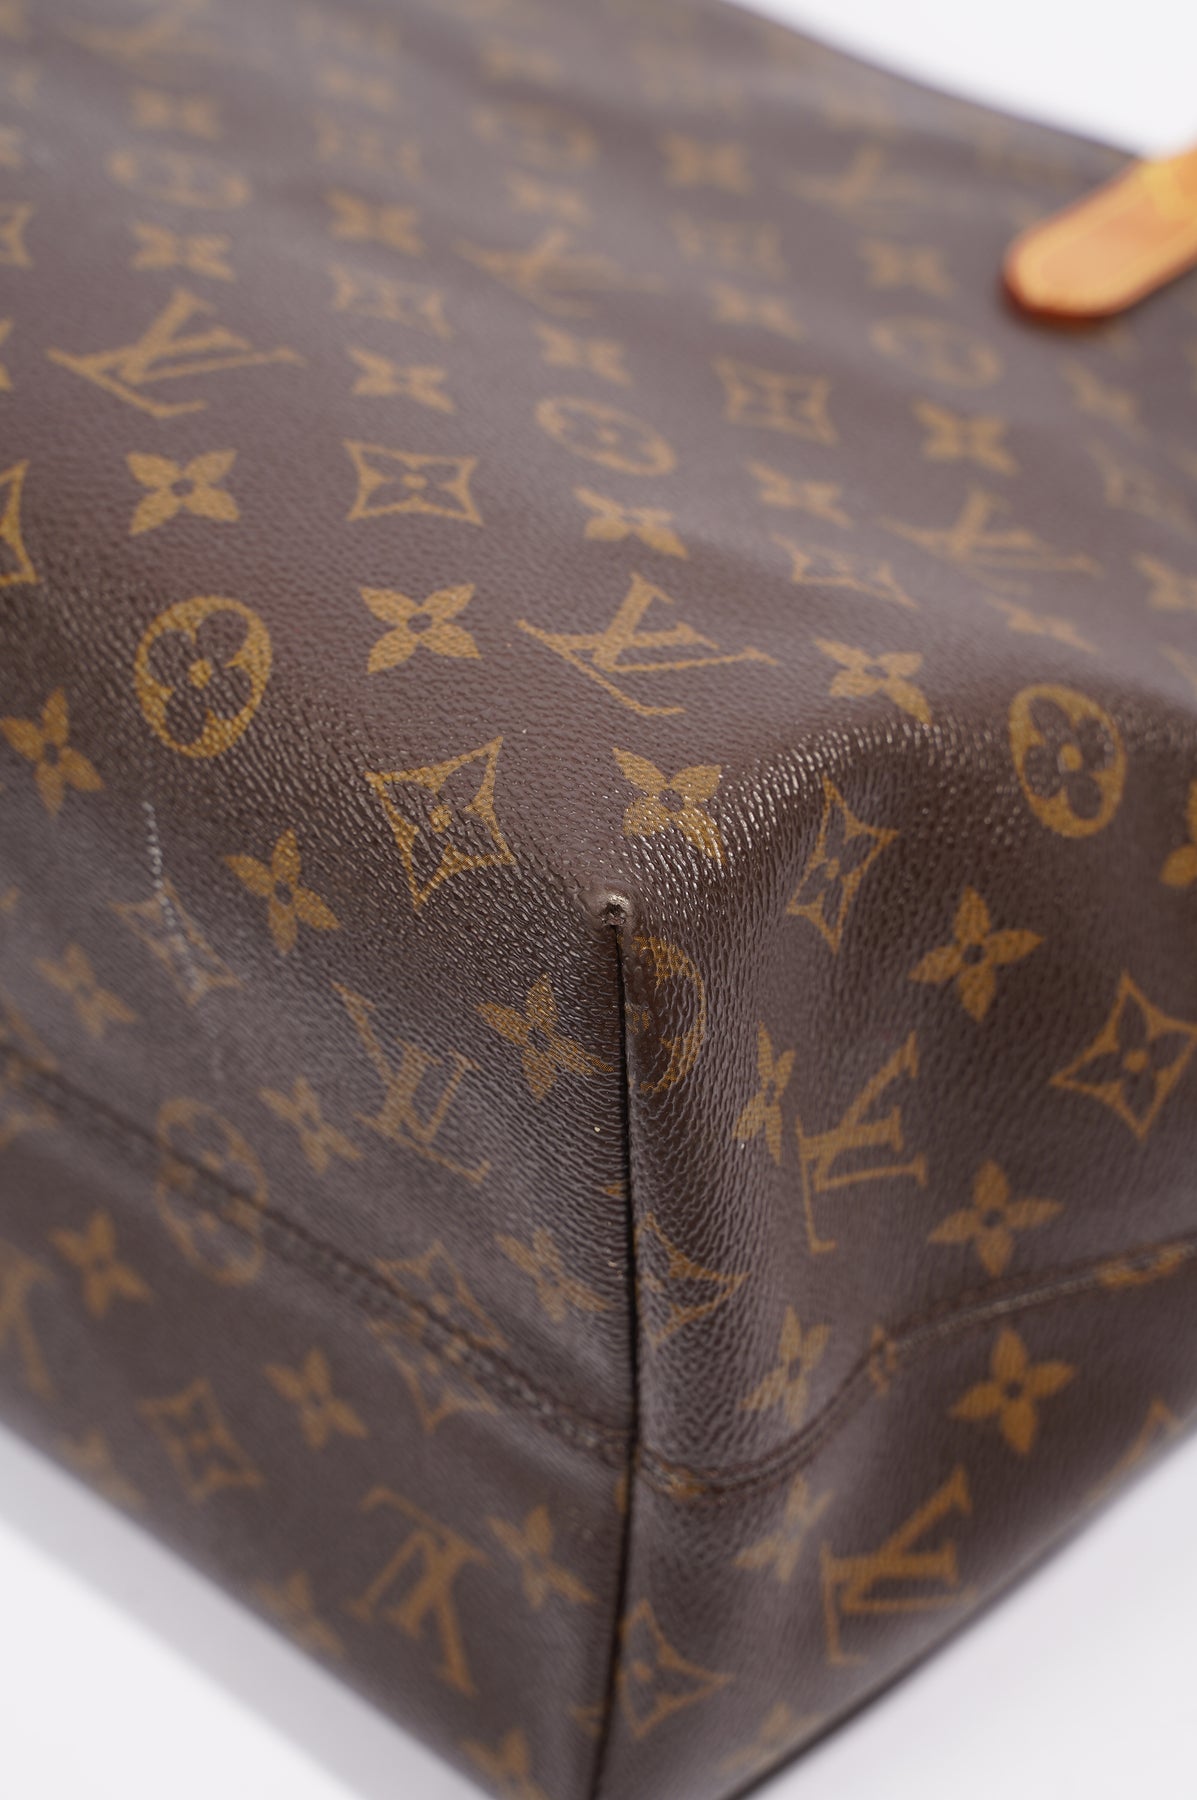 Authentic Louis Vuitton Raspail Monogram Canvas Leather Crossbody